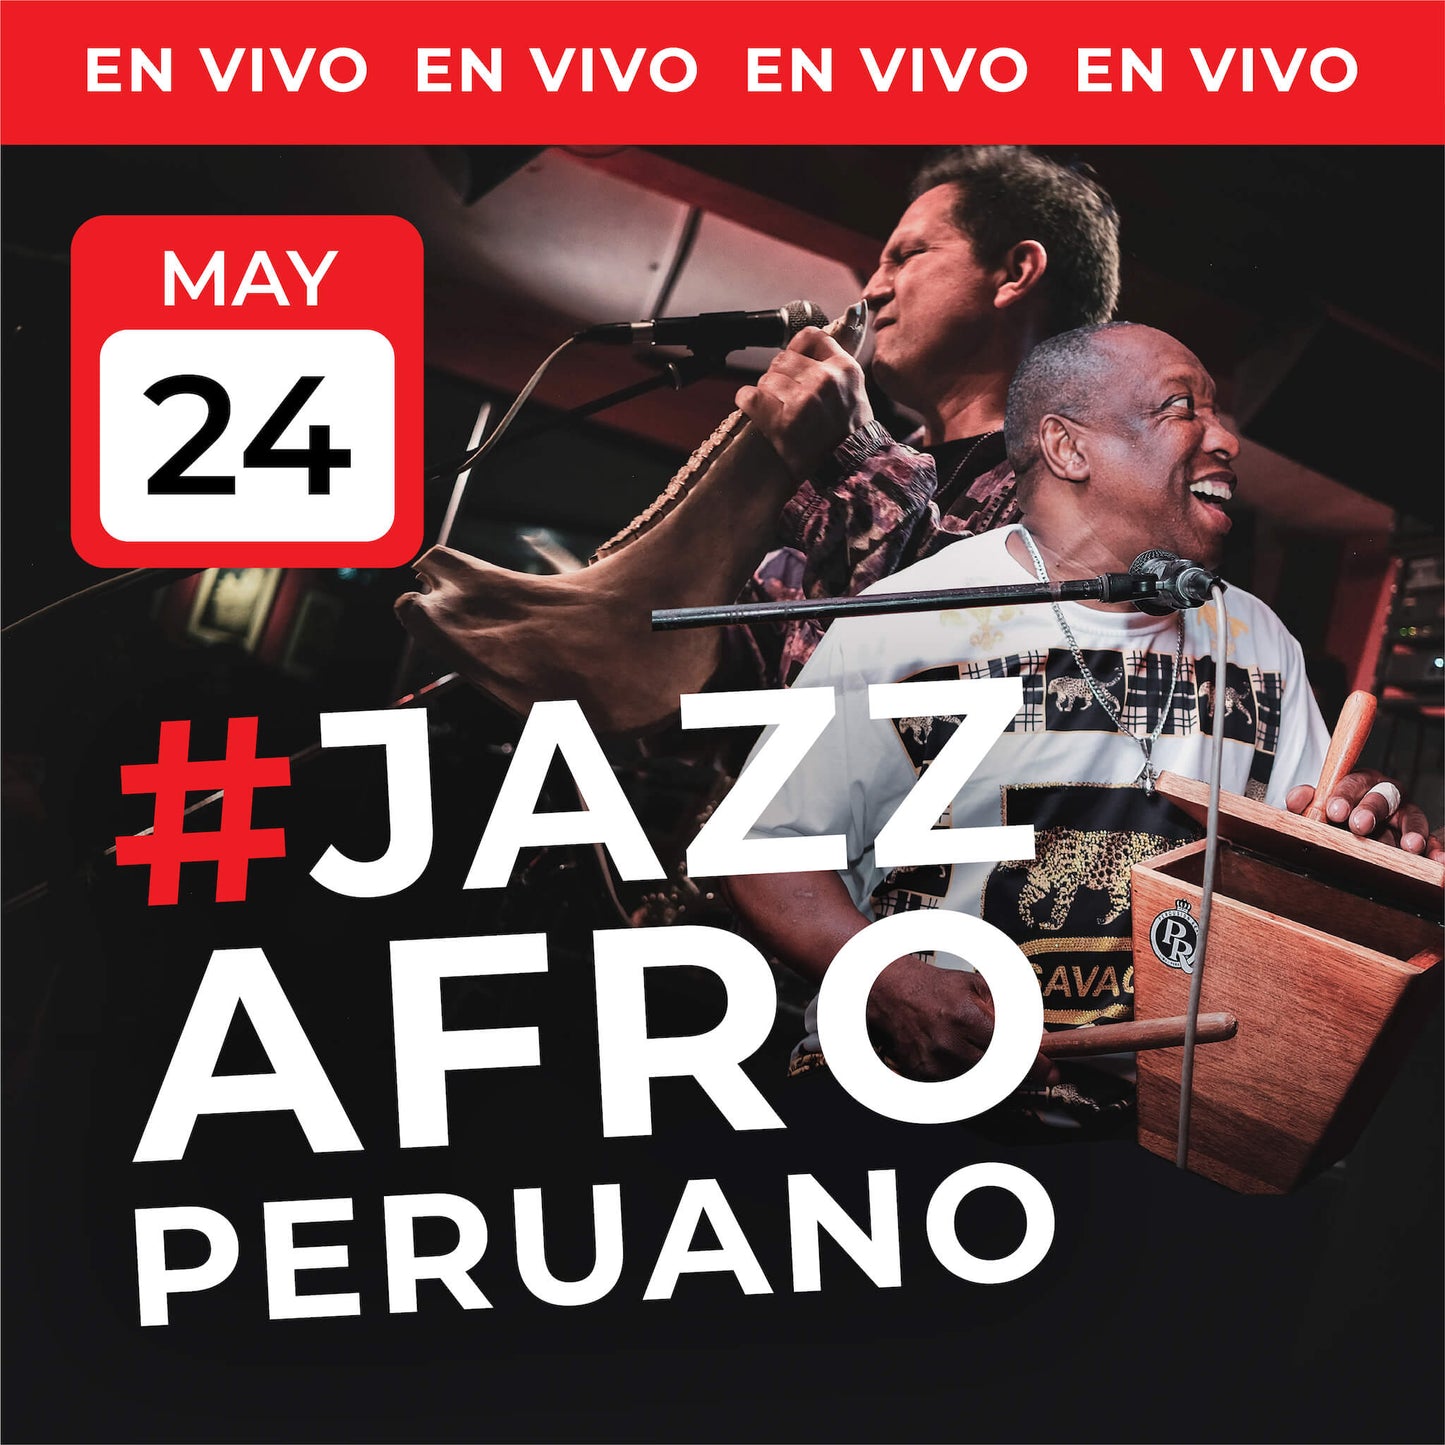 24 May | #JazzAfroperuano EN VIVO